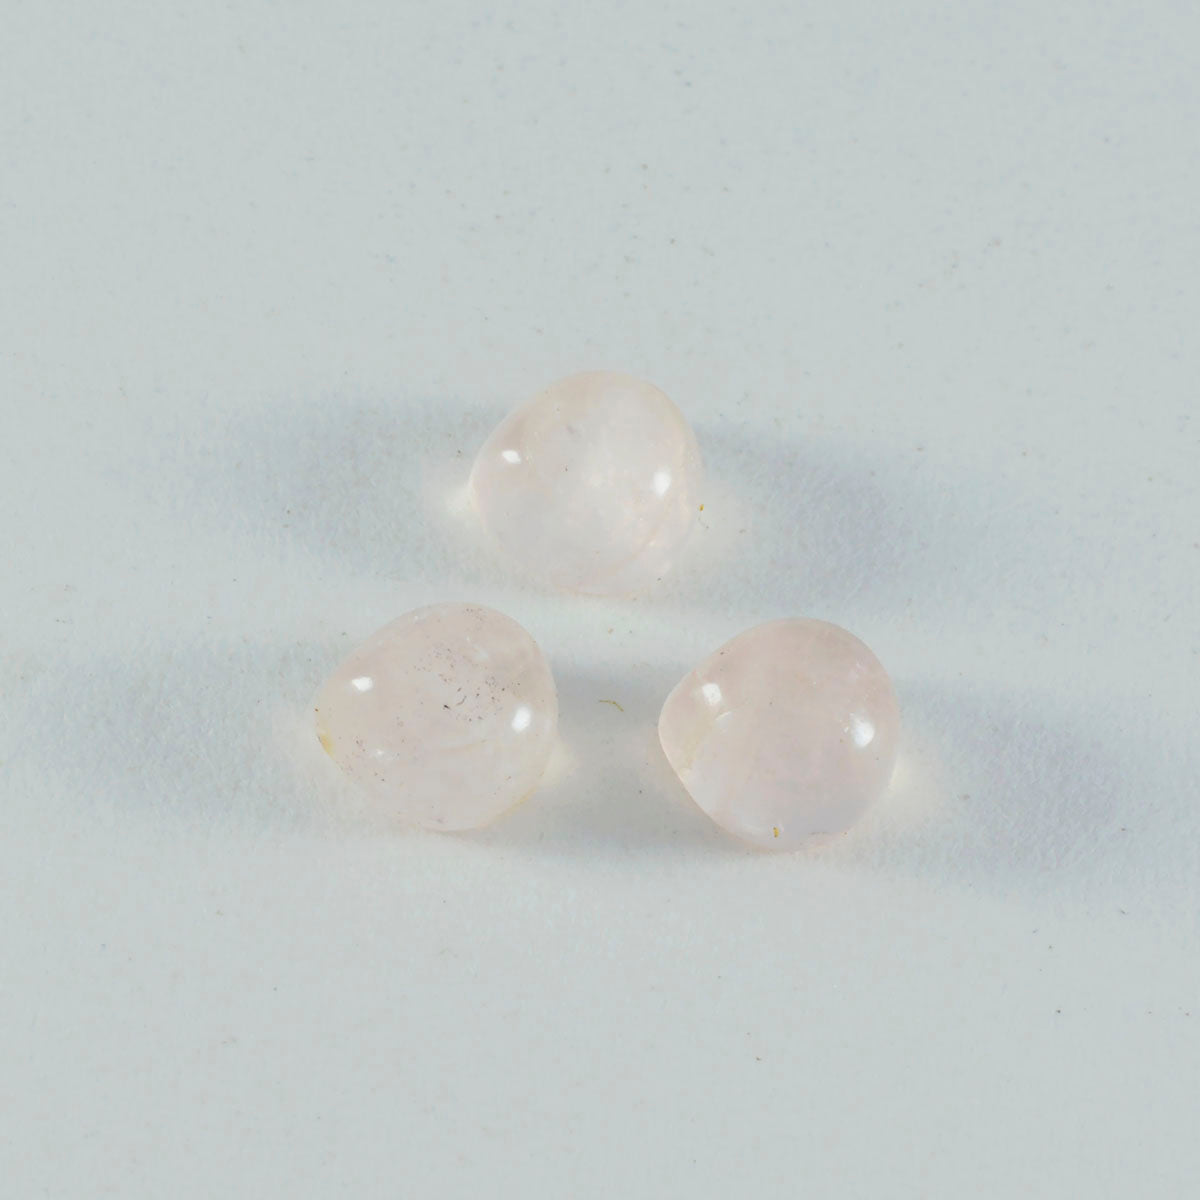 riyogems 1 шт. кабошон из розового кварца 6x6 мм в форме сердца потрясающего качества, свободный драгоценный камень